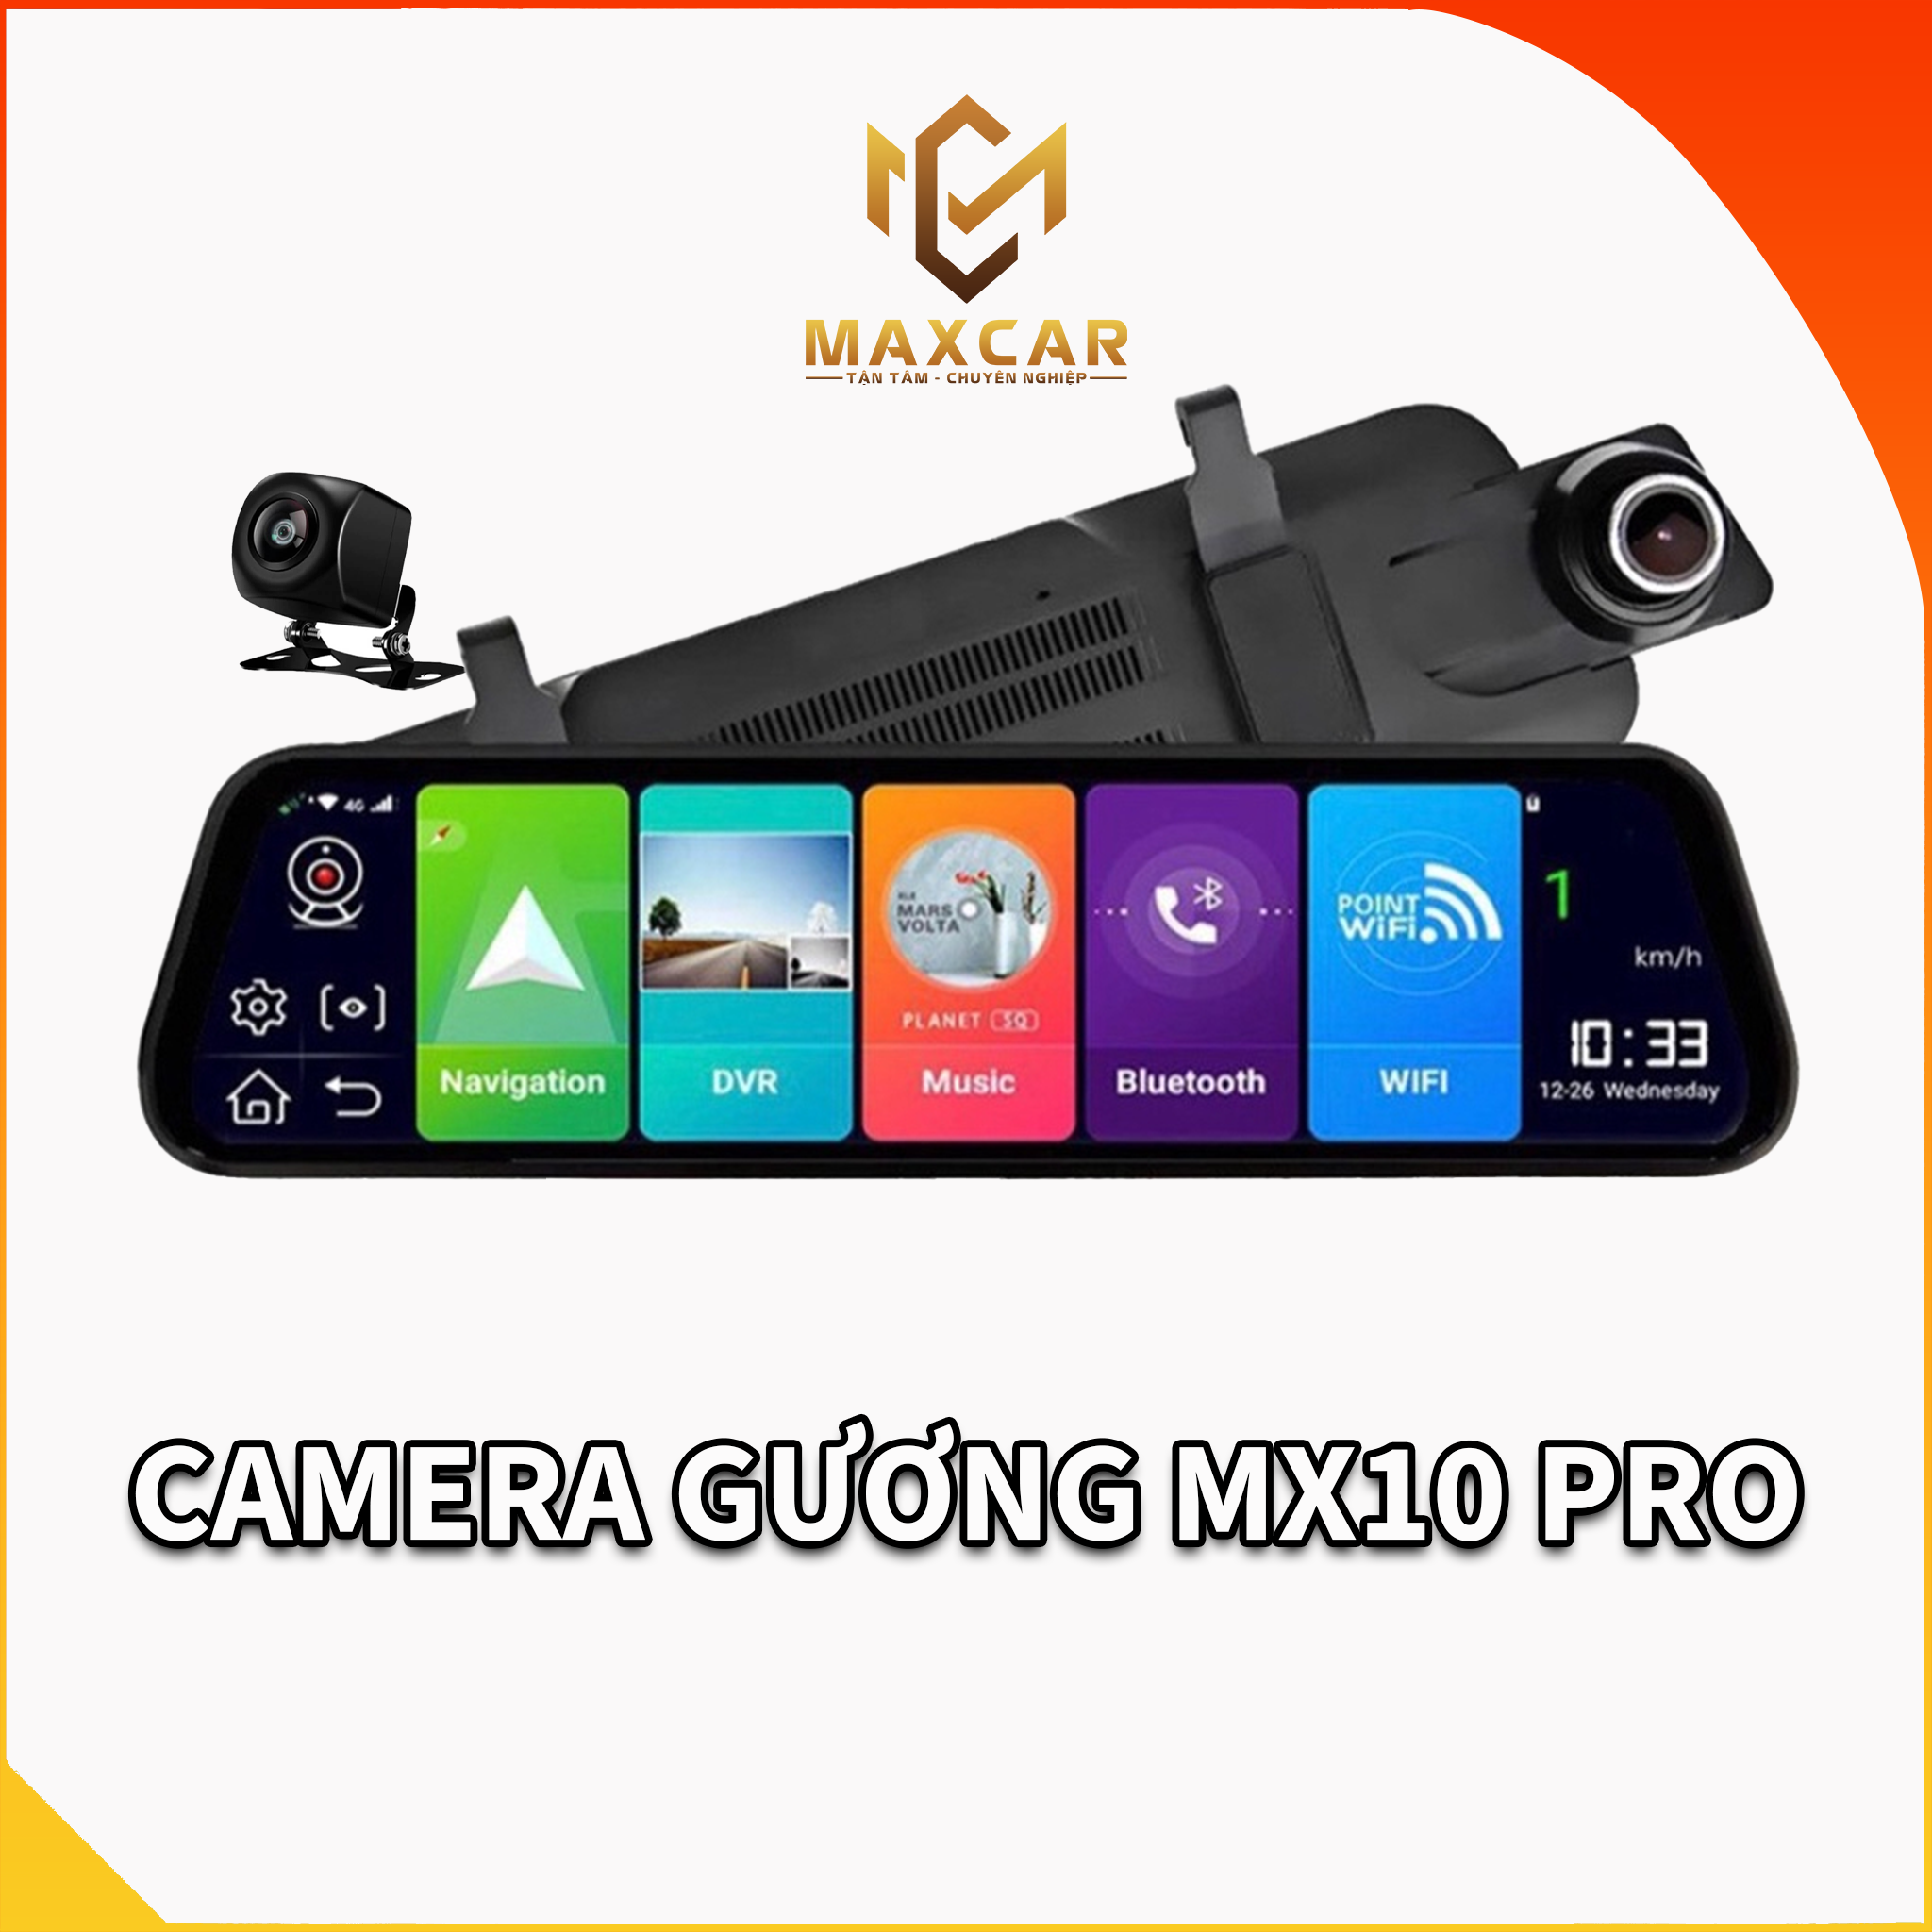 Camera hành trình gương mx10pro chính hãng maxcar